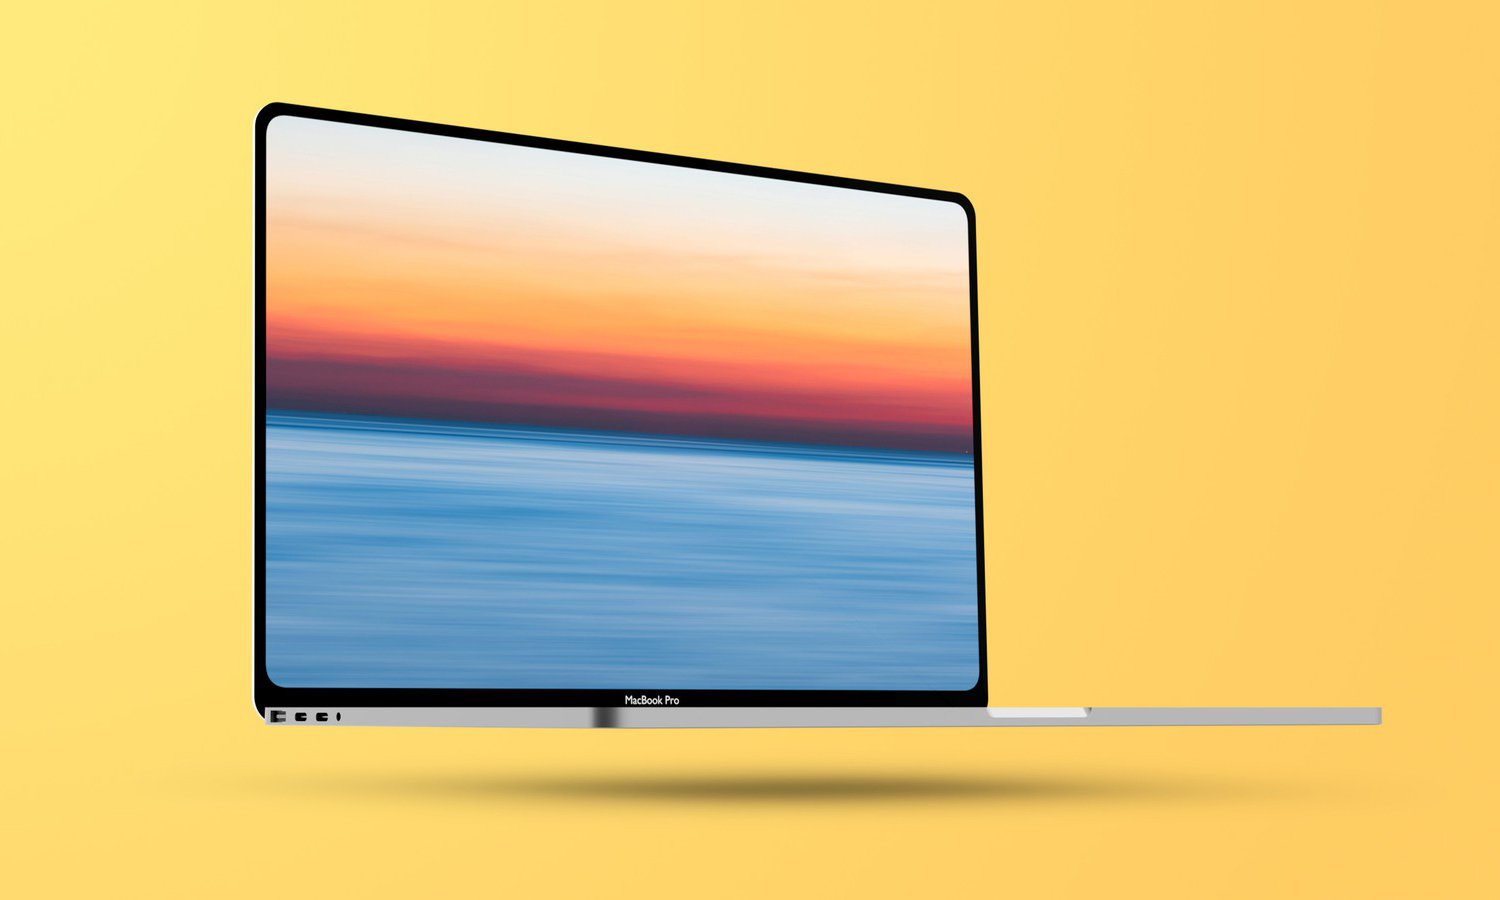 新款 14 英寸 MacBook Pro 将采用超窄边框与 Mini-LED 显示屏